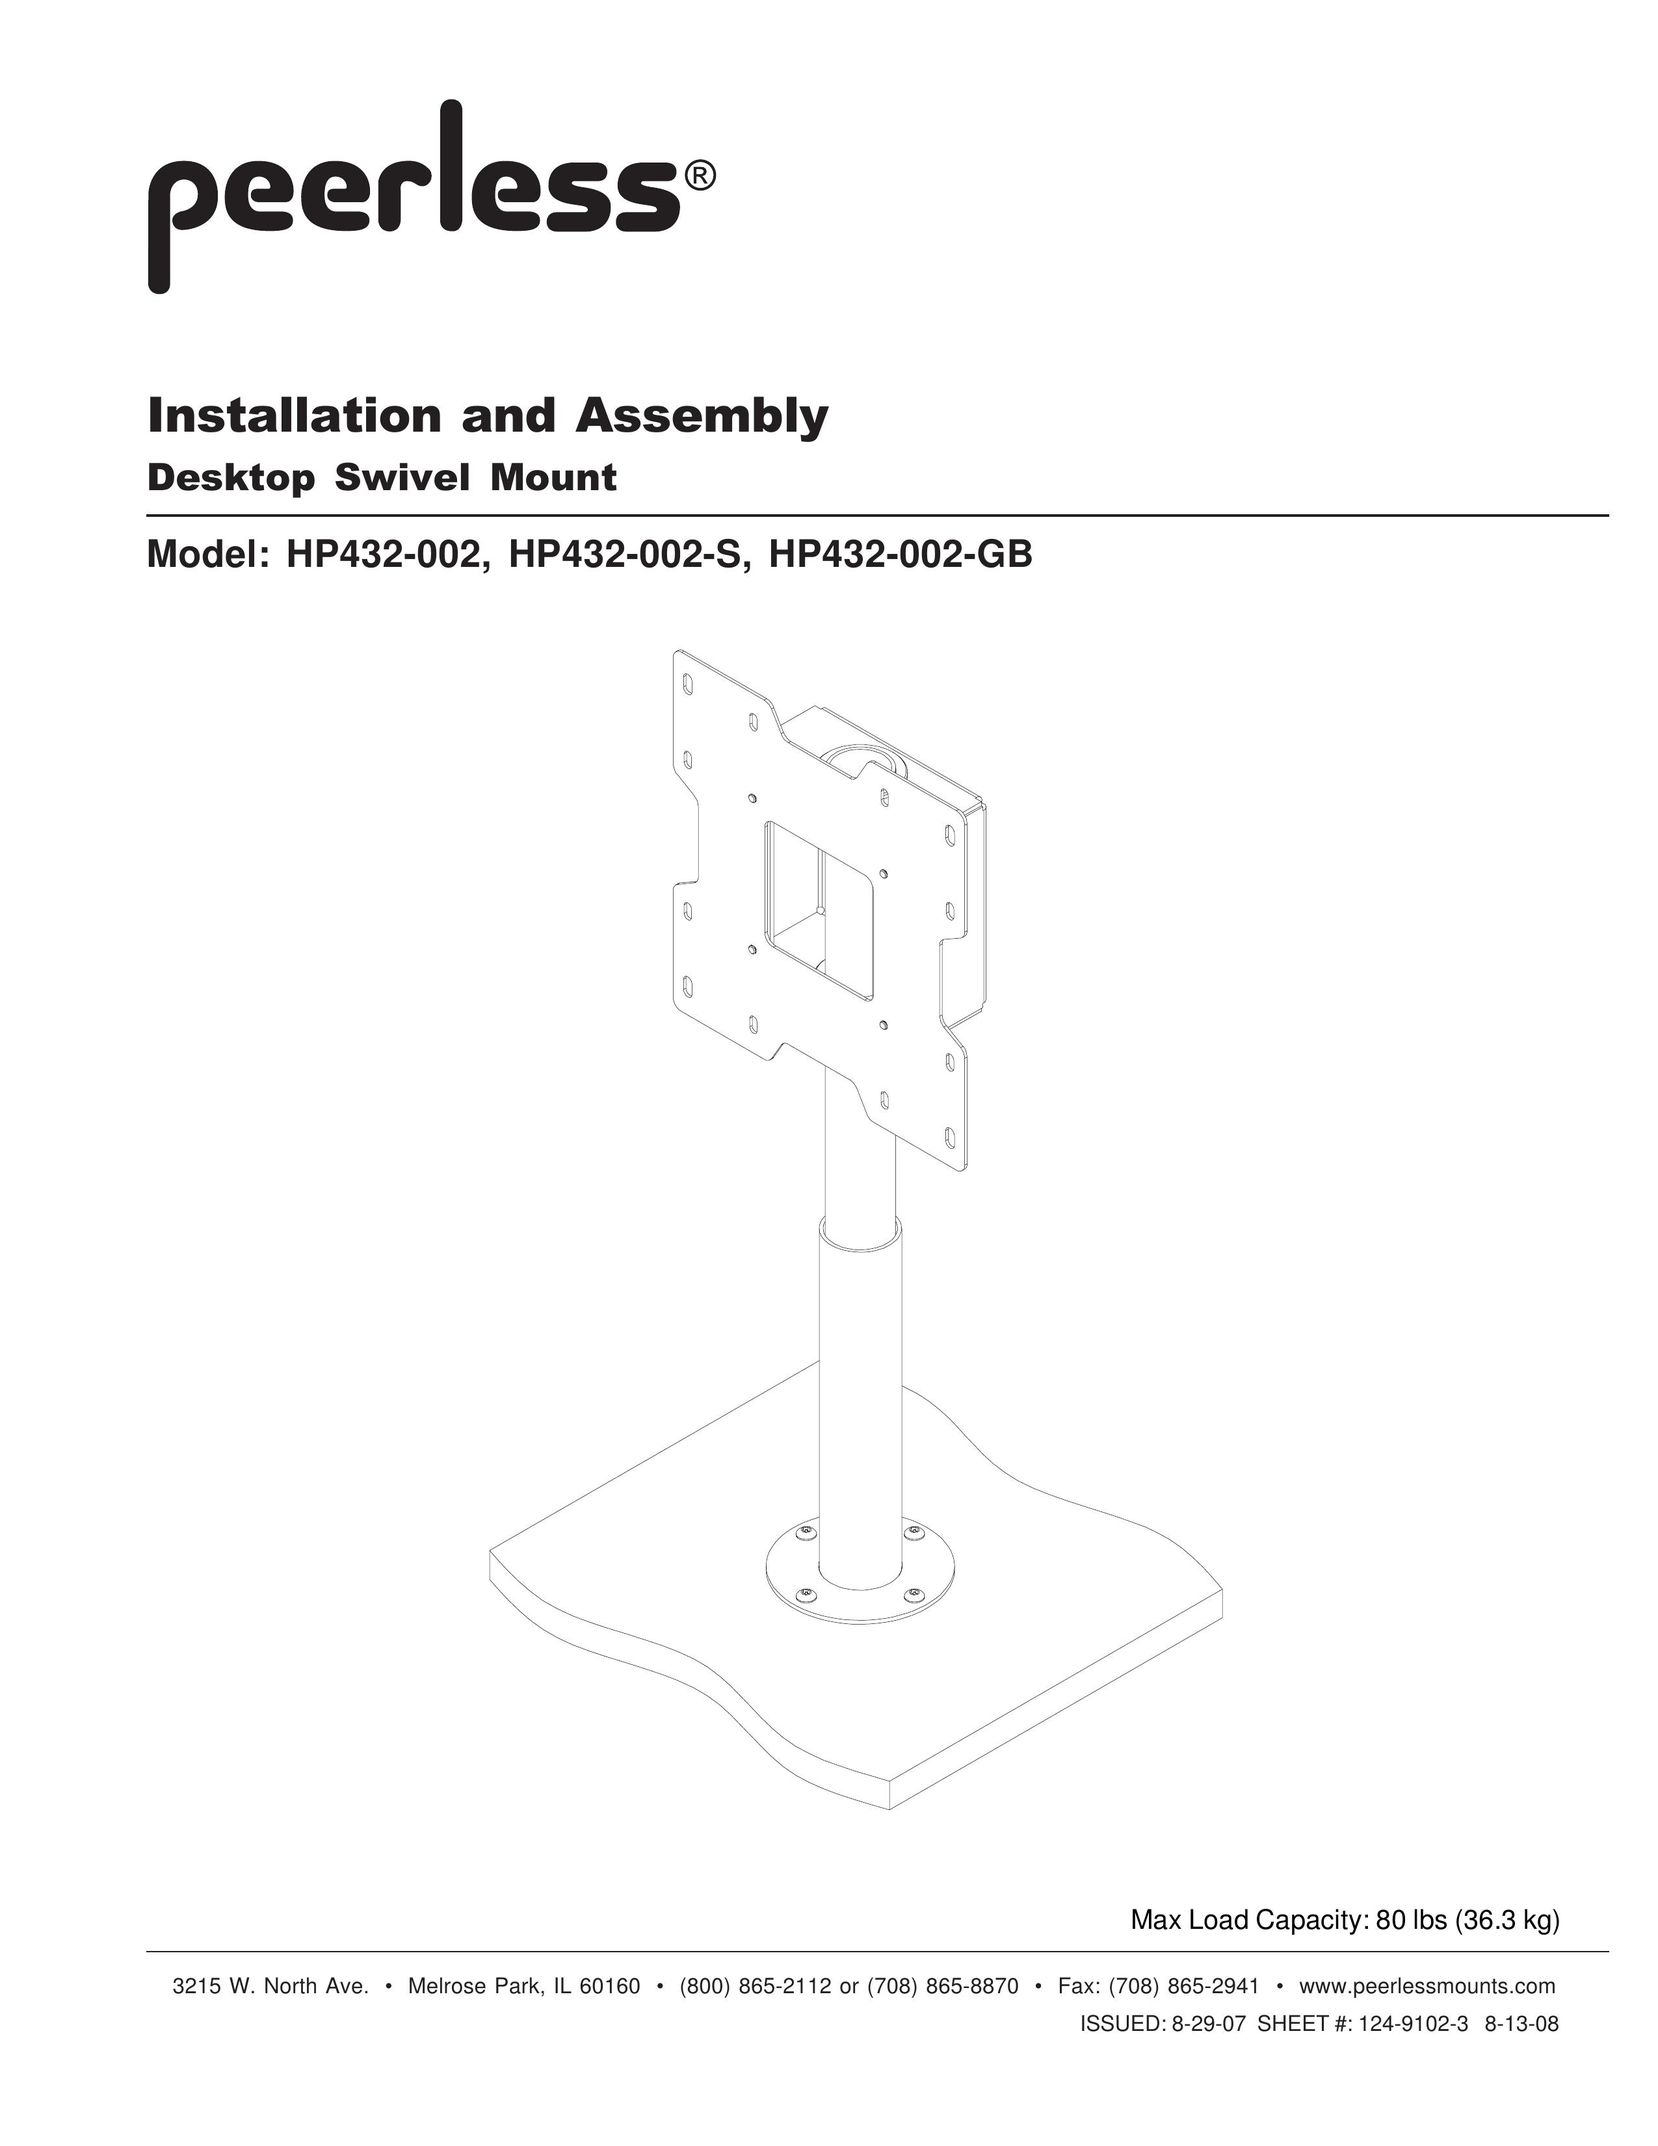 Peerless Industries HP432-002-GB TV Mount User Manual